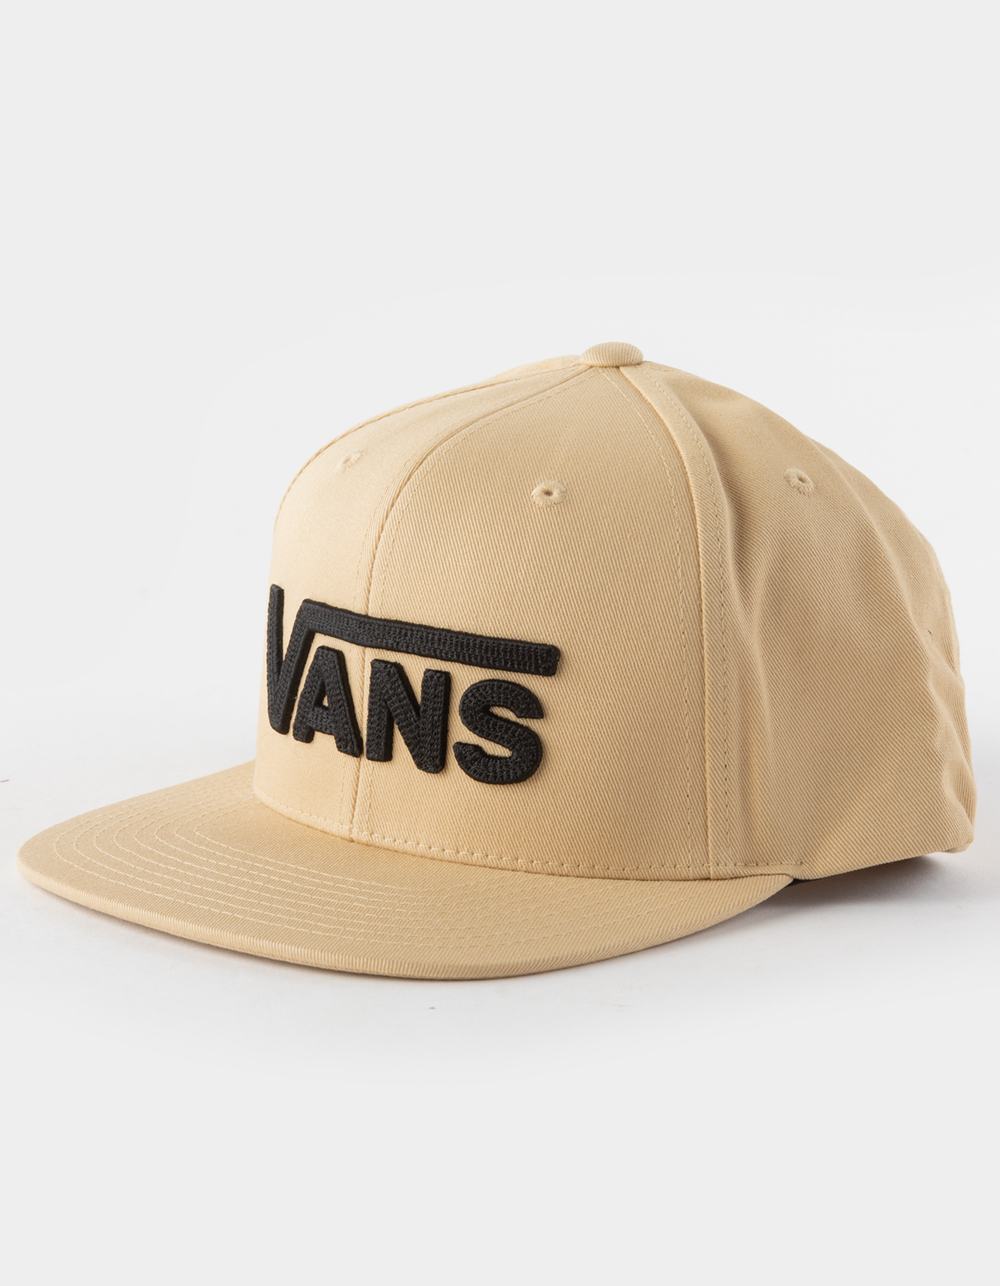 Black | Drop V Snapback Hat TAUPE Tillys II VANS Mens -